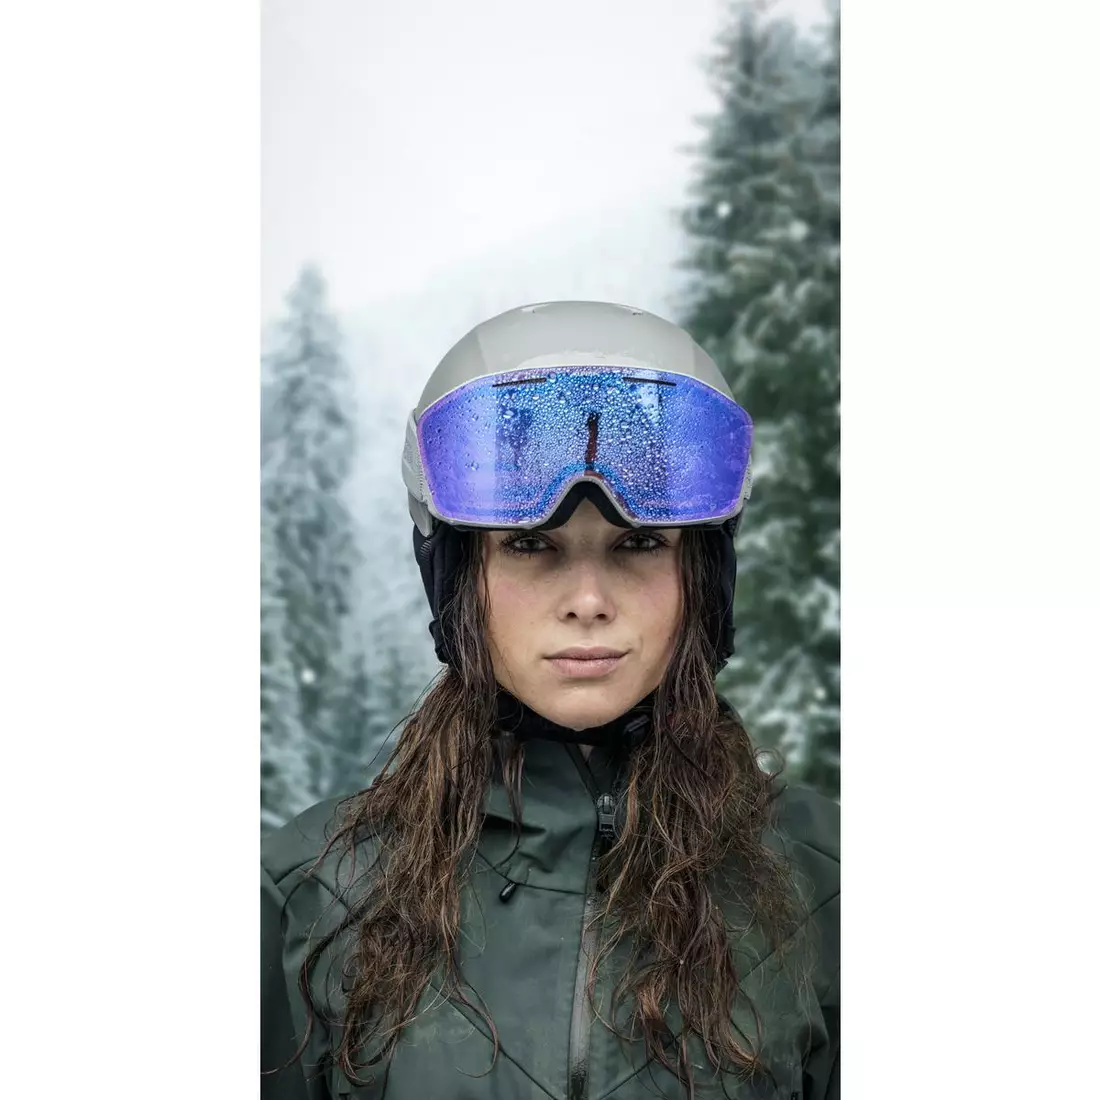 ALPINA sí/snowboard szemüveg, kontrasztjavító NENDAZ Q-LITE FEKETE-SÁRGA MATT üveg Q-LITE RED S2